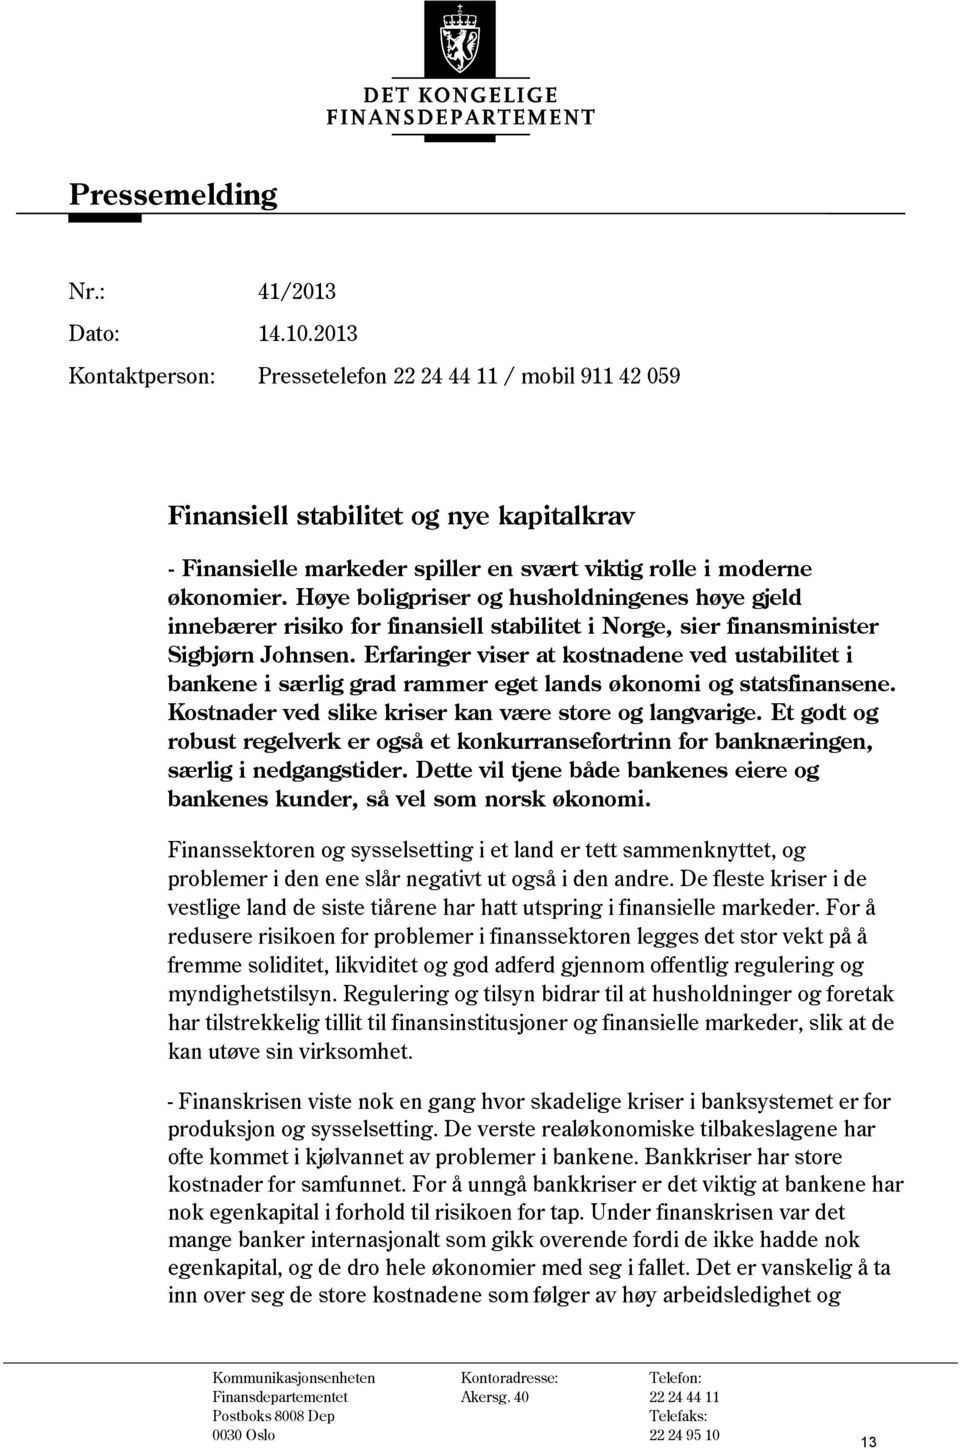 Høye boligpriser og husholdningenes høye gjeld innebærer risiko for finansiell stabilitet i Norge, sier finansminister Sigbjørn Johnsen.